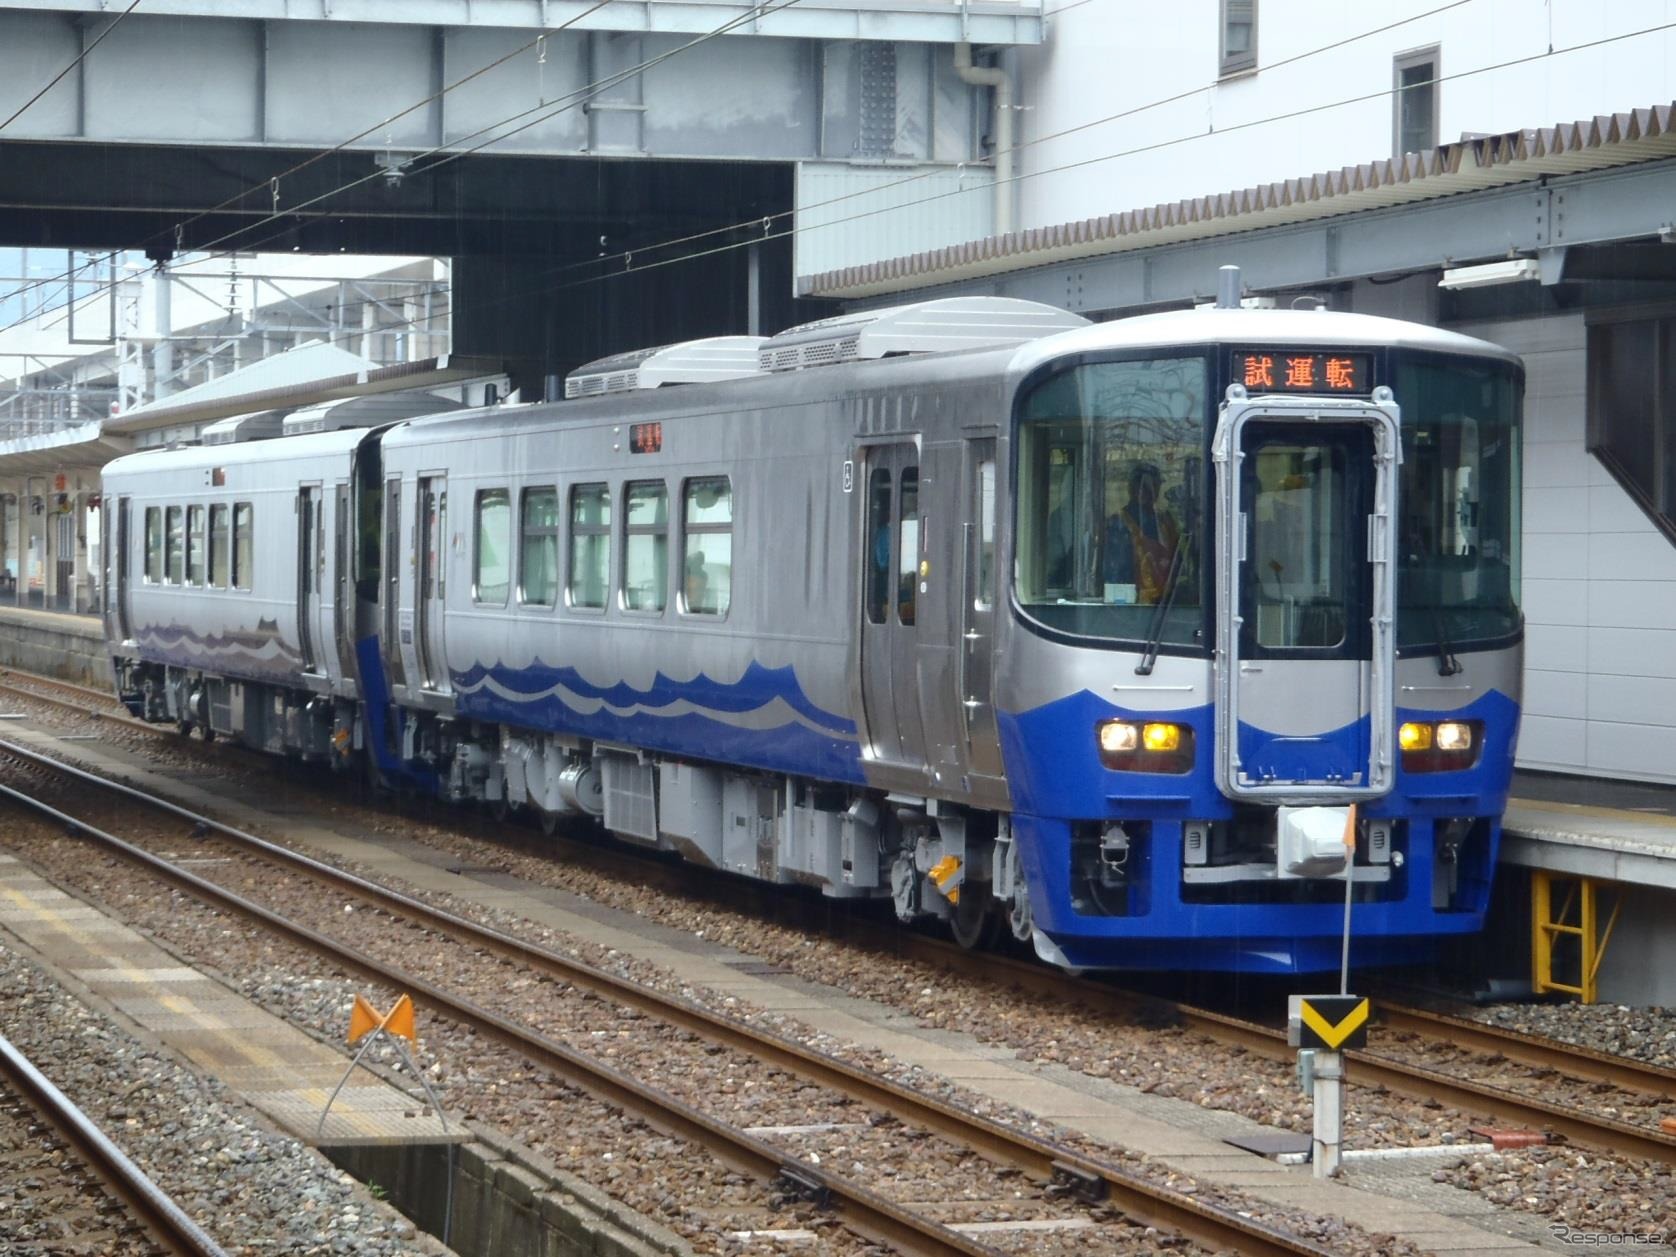 北陸新幹線の開業に伴い、並行在来線は各県が設立した第三セクターに引き継がれる。写真は新潟県内区間を運営するえちごトキめき鉄道のET122形気動車。